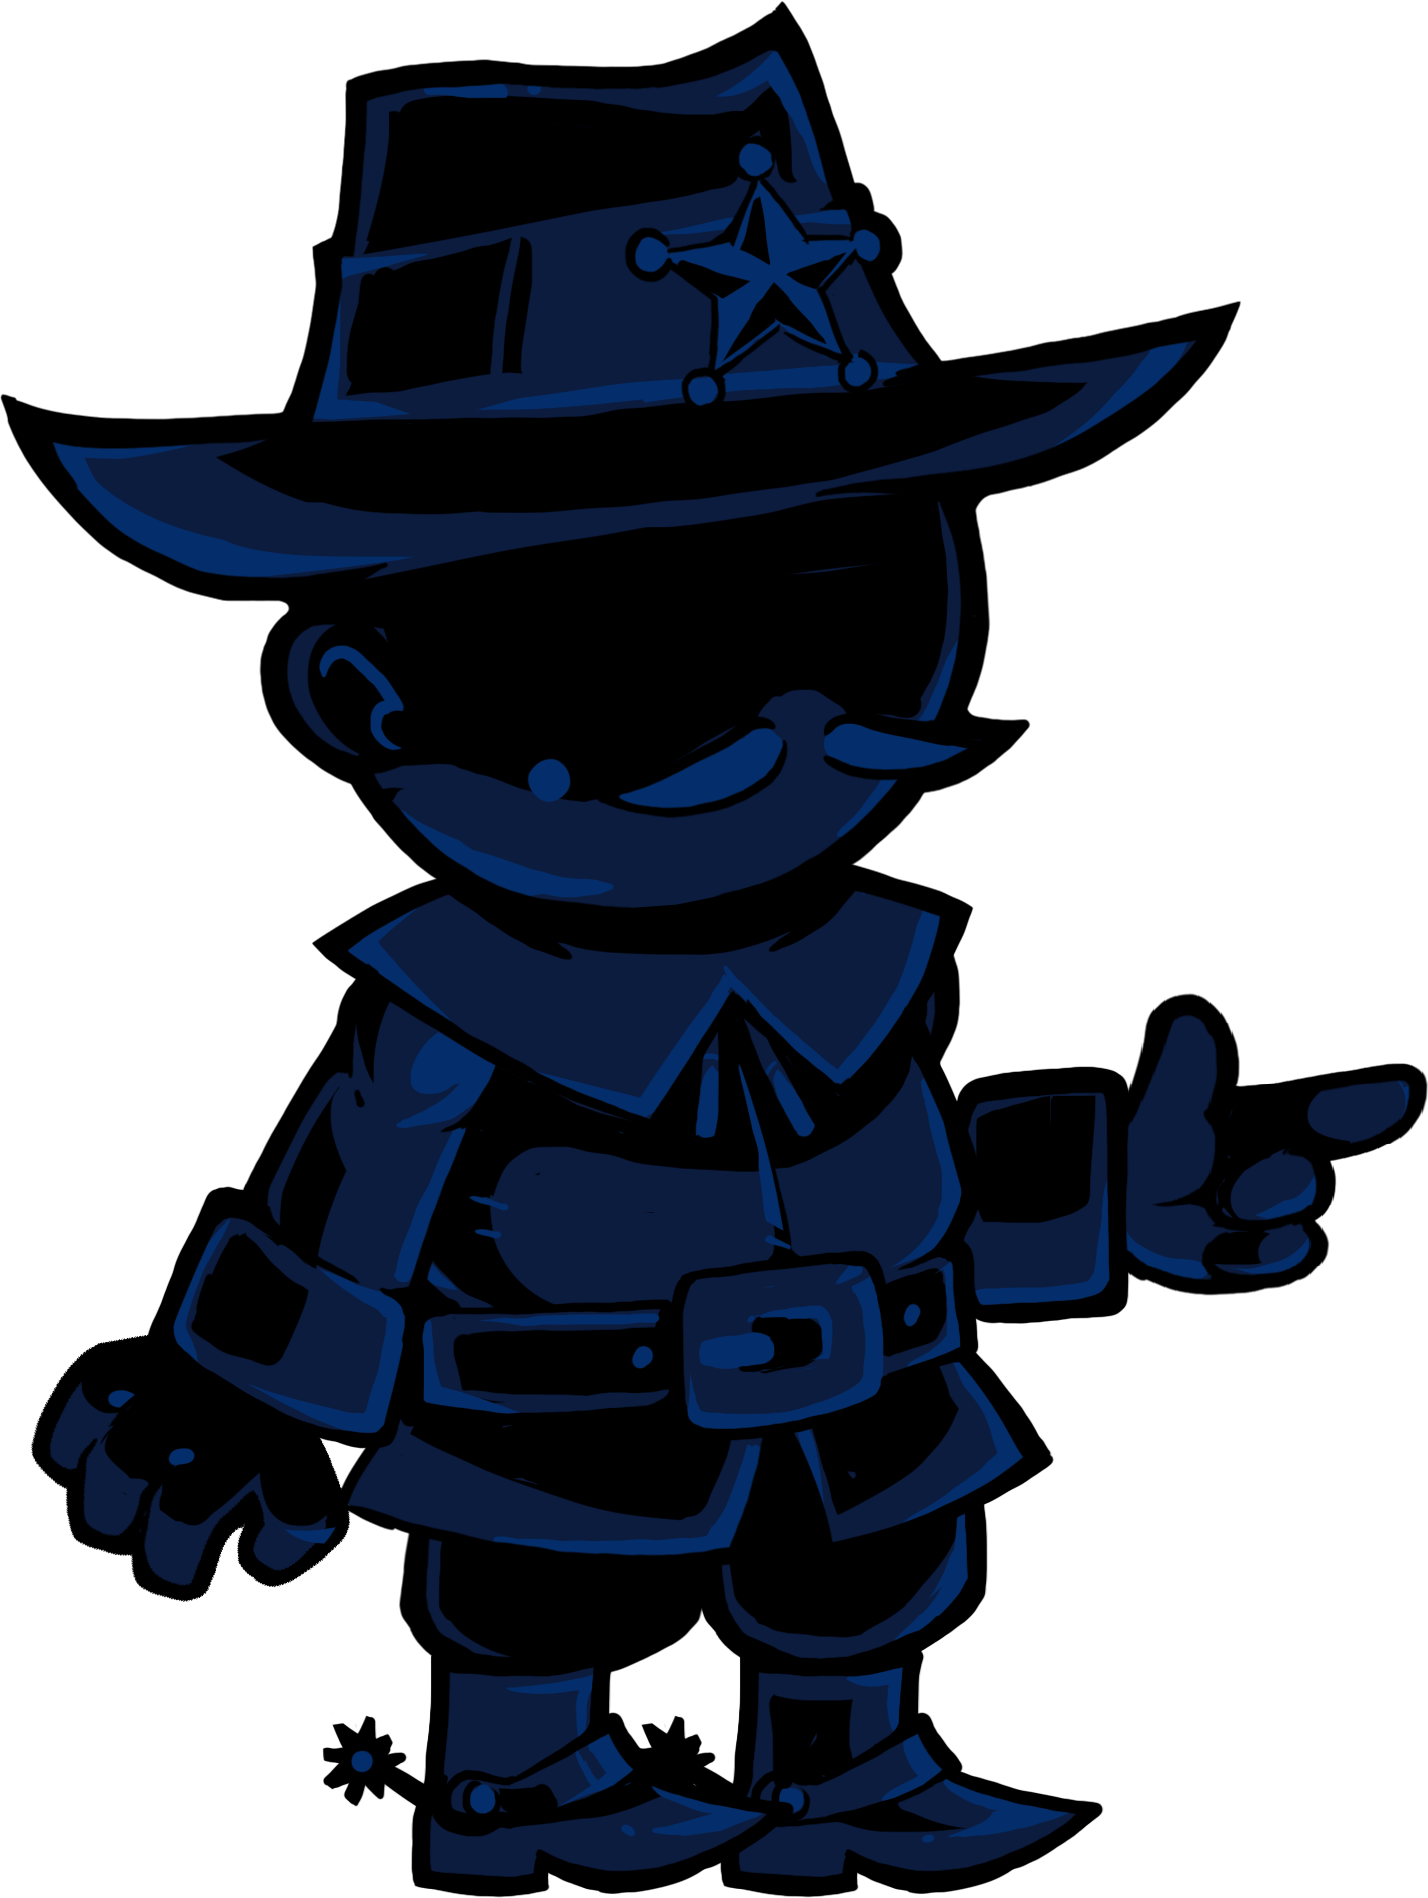 Sheriff, Town of Salem Wiki